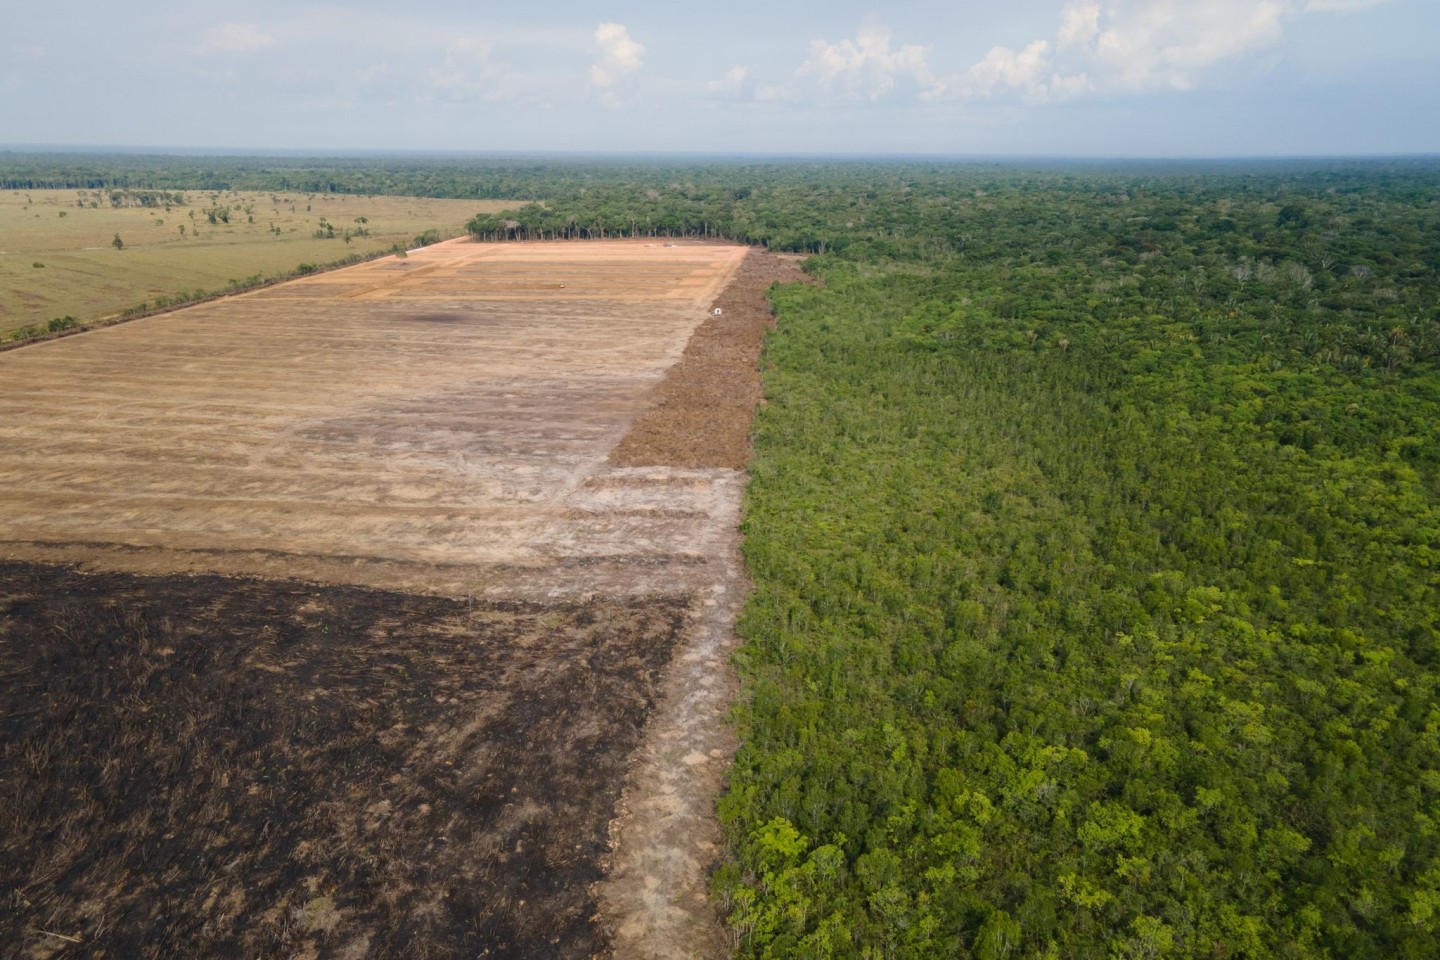 Das Luftbild zeigt eine verbrannte und abgeholzte Fläche im brasilianischen Amazonas-Gebiet.